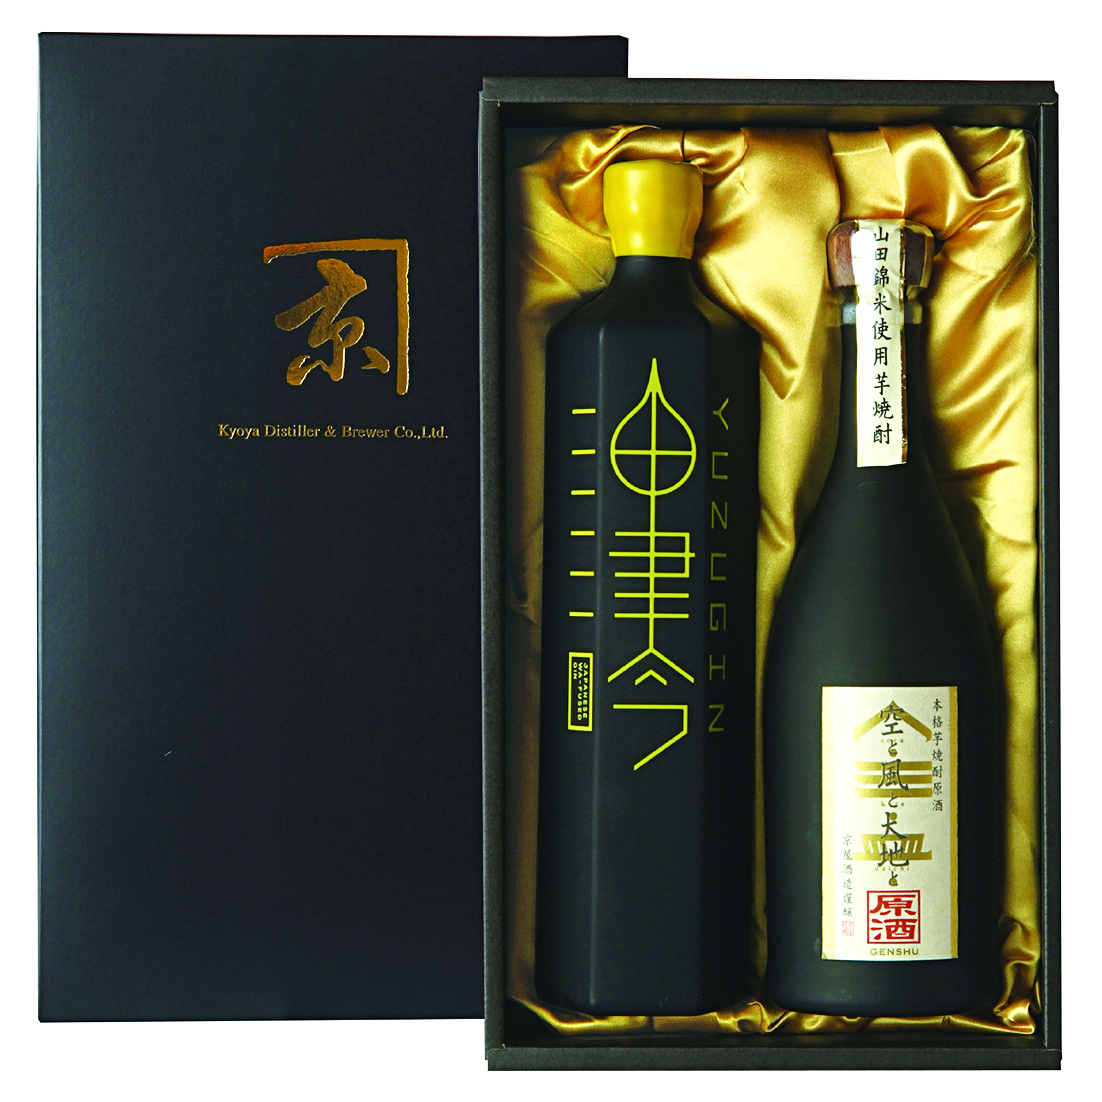 京屋酒造公式ショッピングサイト KYOYA プレミアム 2本セット (空風原酒・油津吟) 手提げ袋付き